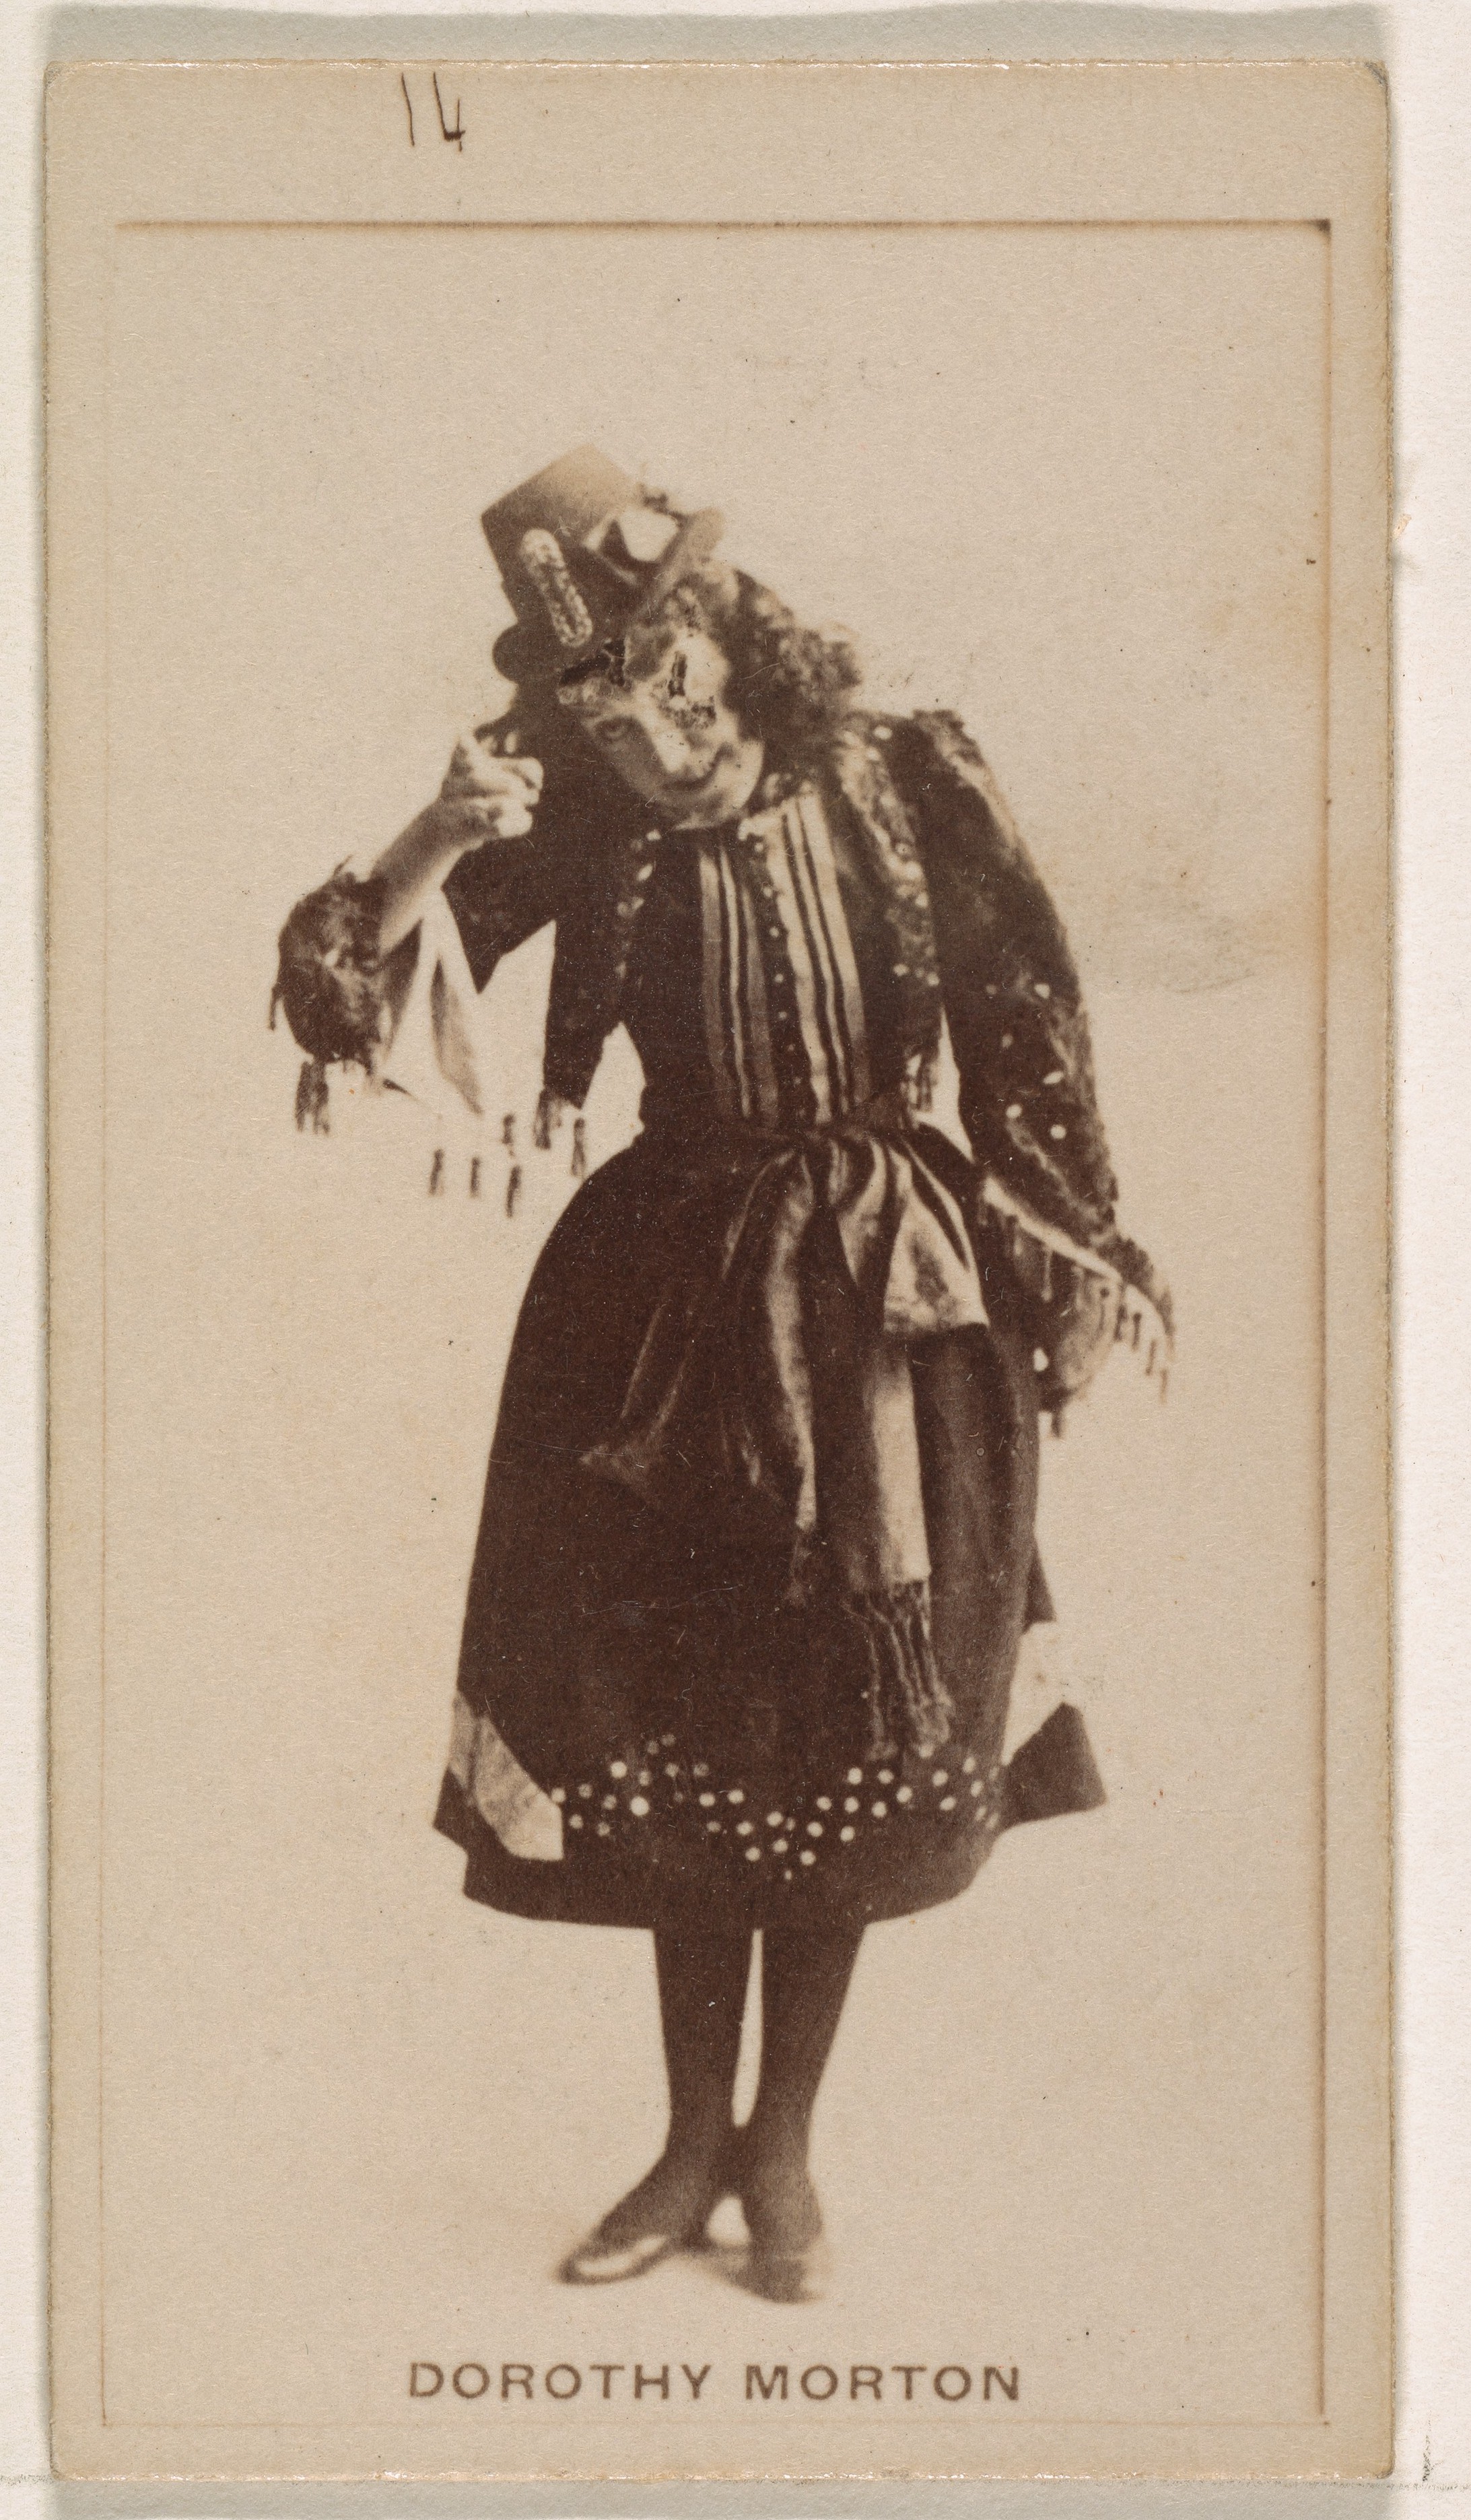 Дороти Мортон из серии торговых карточек Актрисы для рекламы сигарет, 1890. Табачная компания Братья Кинни